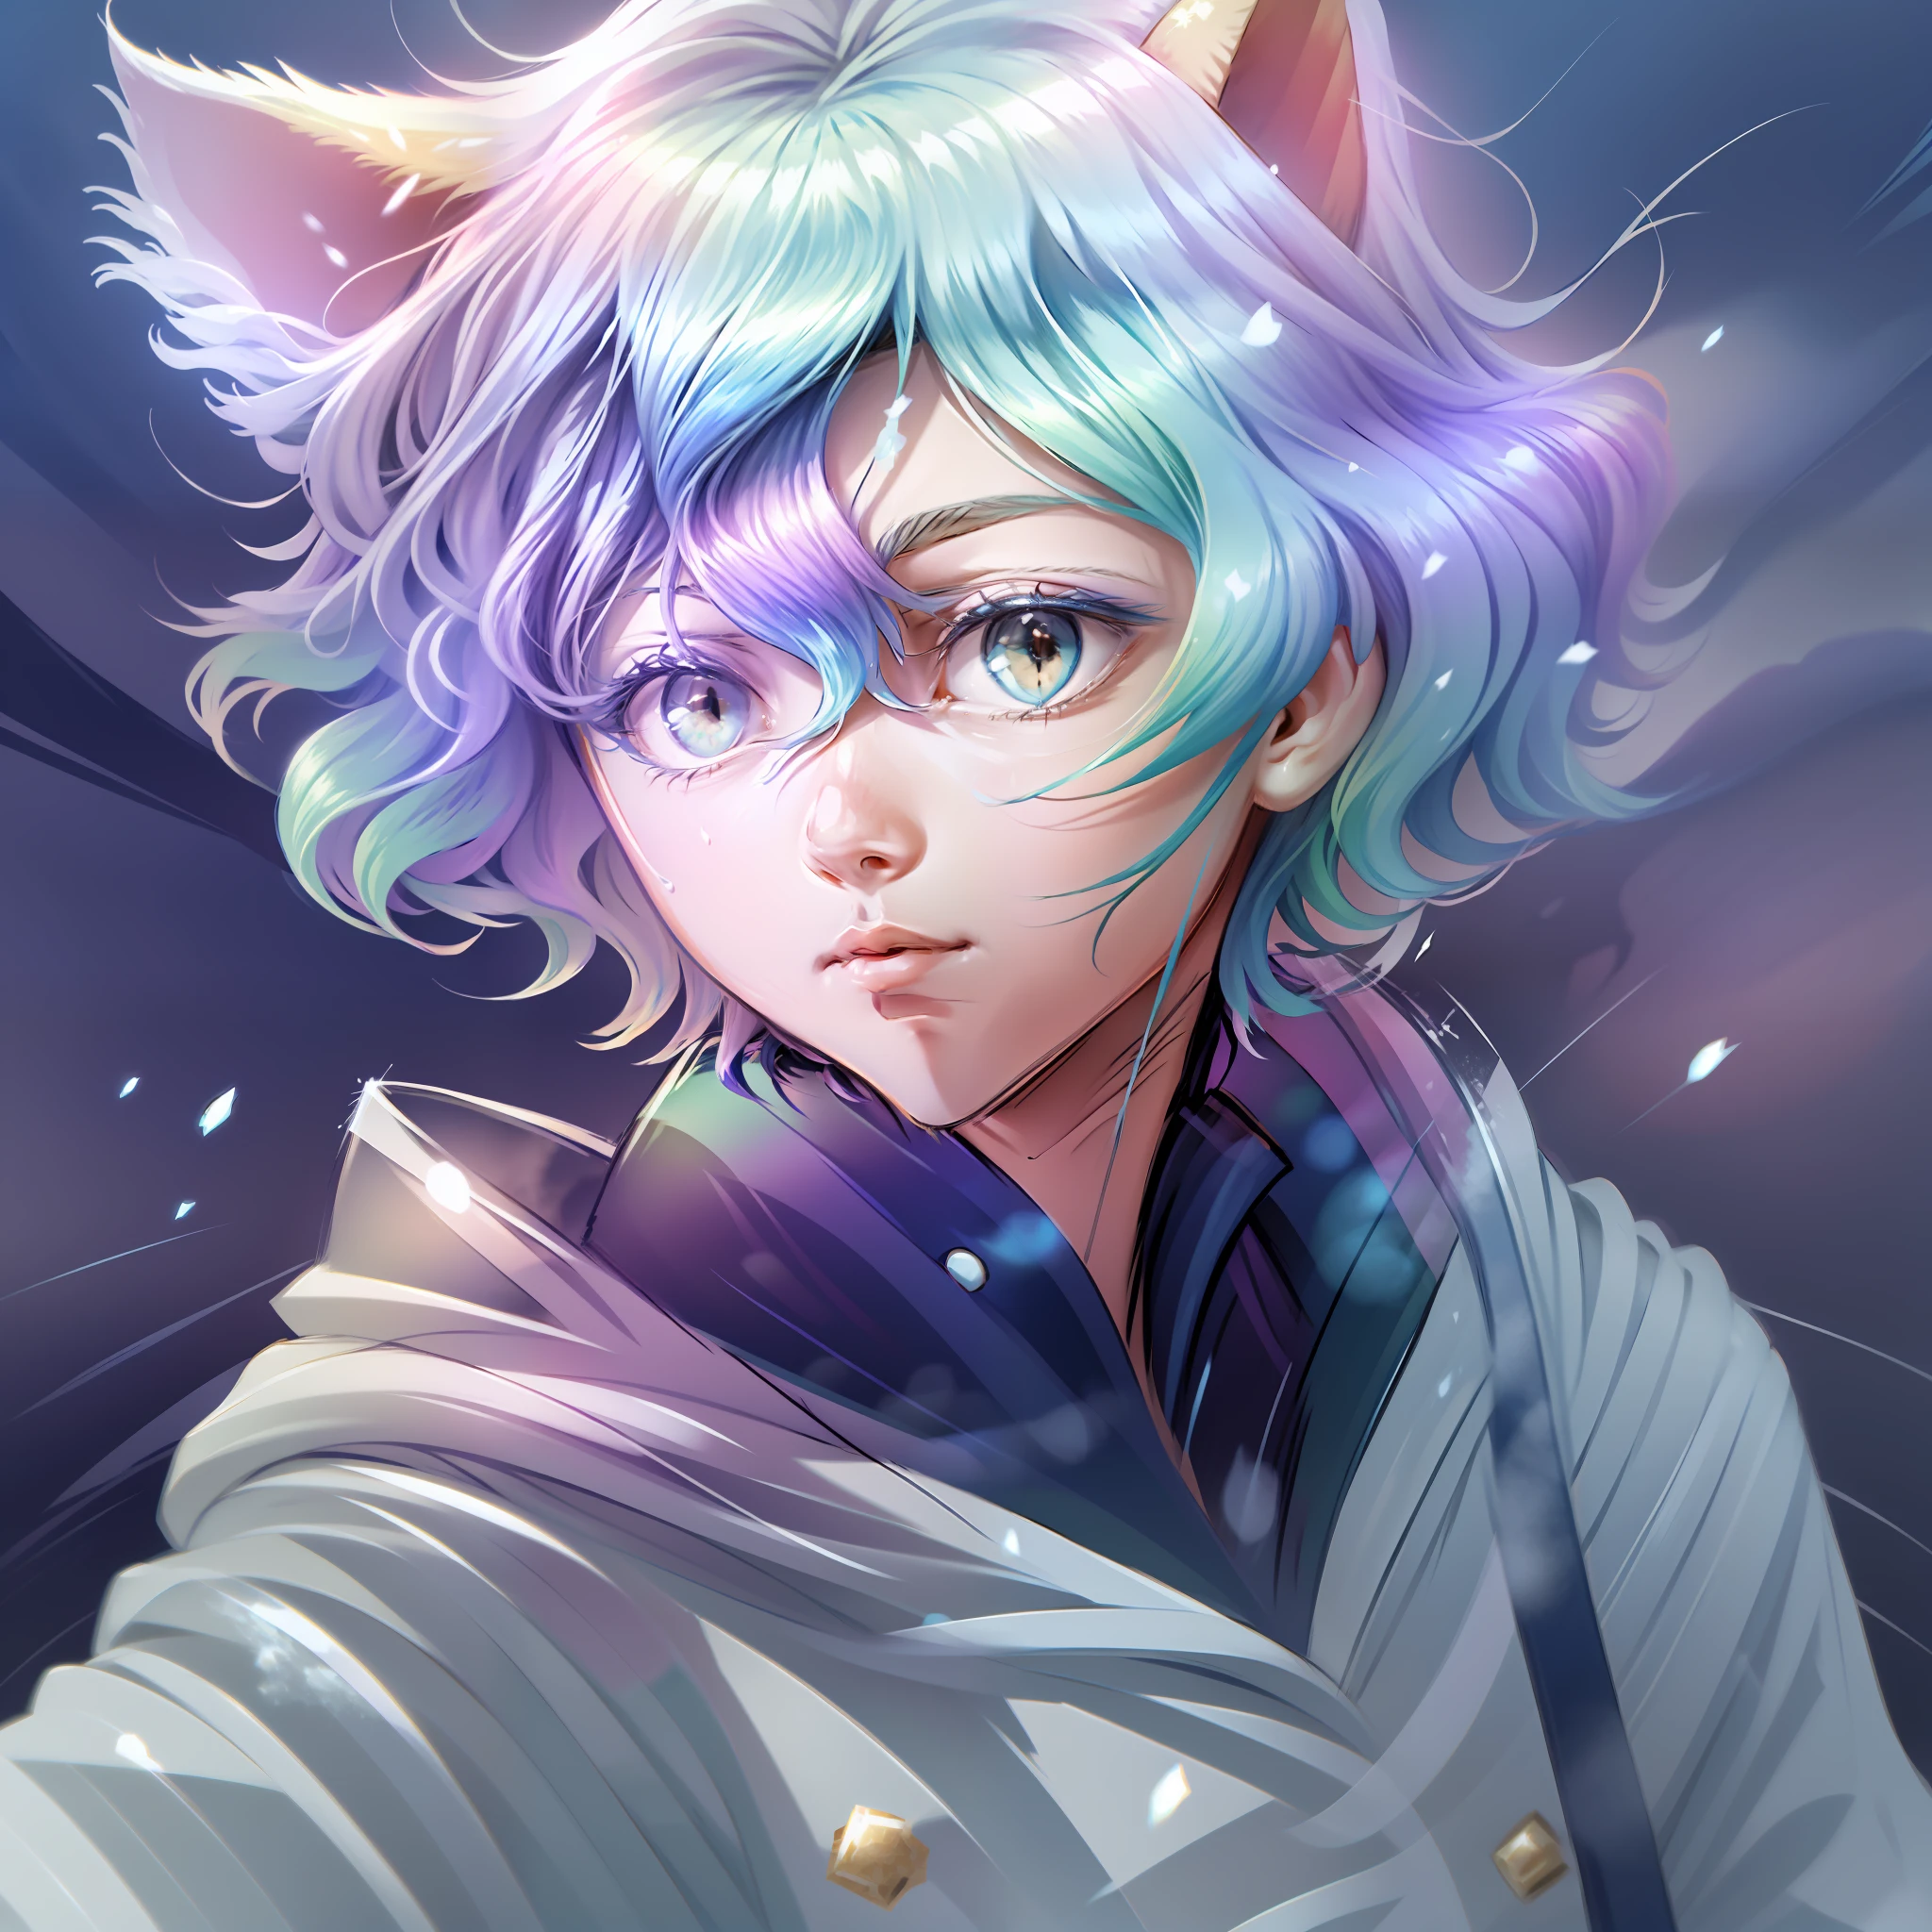 0.7>,Anime Junge,Schnee,(Männlich),Jacke,Diamant,mehrfarbige Haare,mehrfarbige Augen,Katzenohren auf dem Kopf